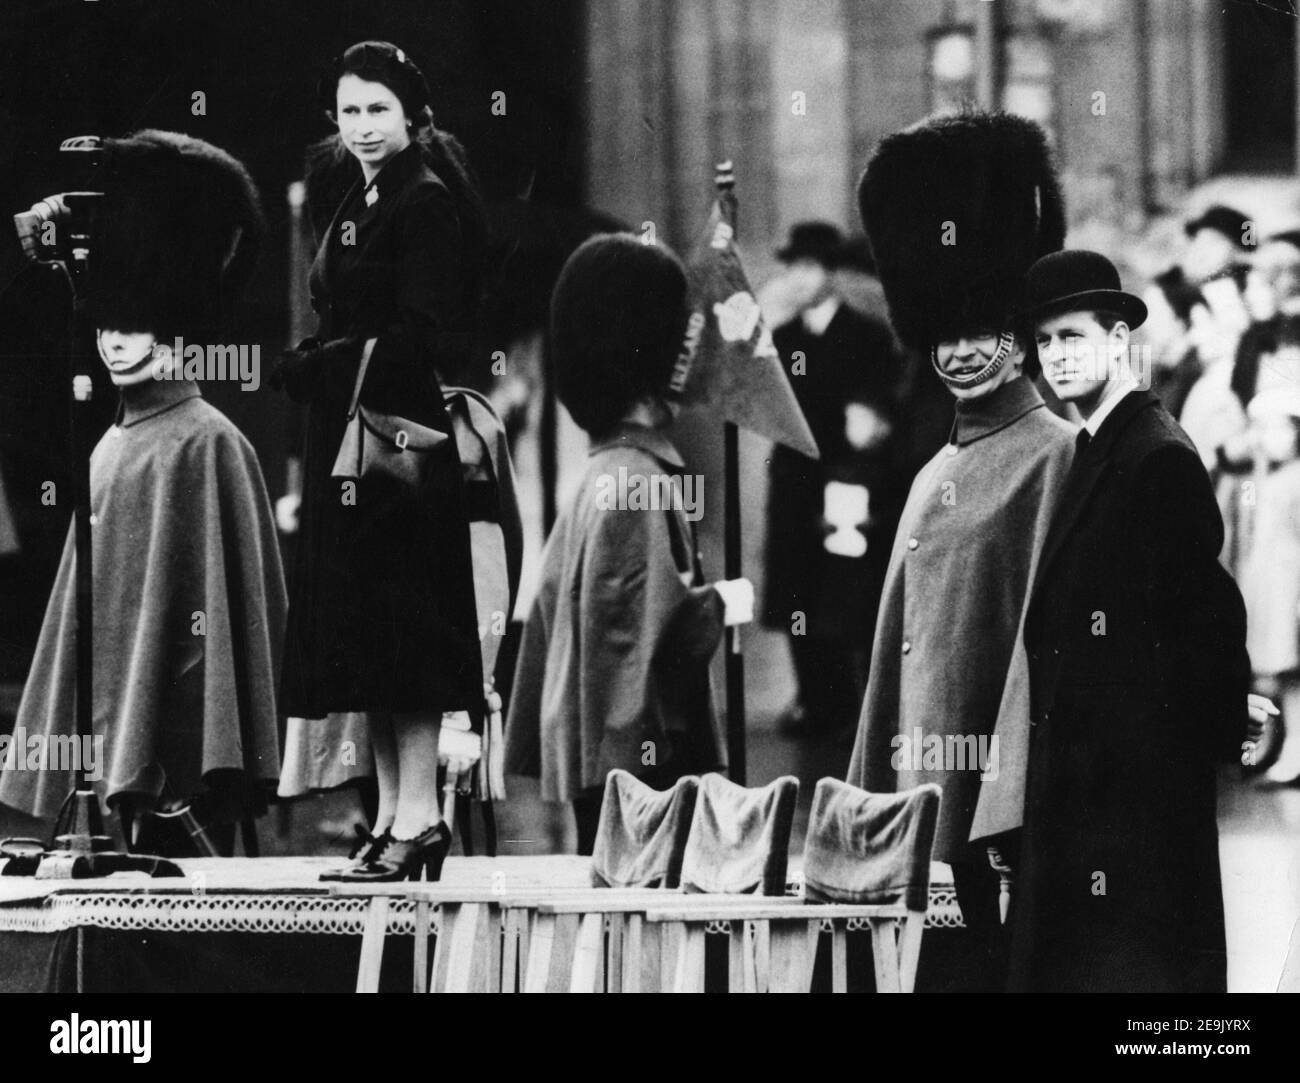 File foto datata 21/04/52 della Regina Elisabetta II che ispeziona i guardiani di Grenadier al Castello di Windsor, la prima sfilata cerimoniale del regno della Regina. La Regina regnerà come monarca per 69 anni il sabato. Foto Stock